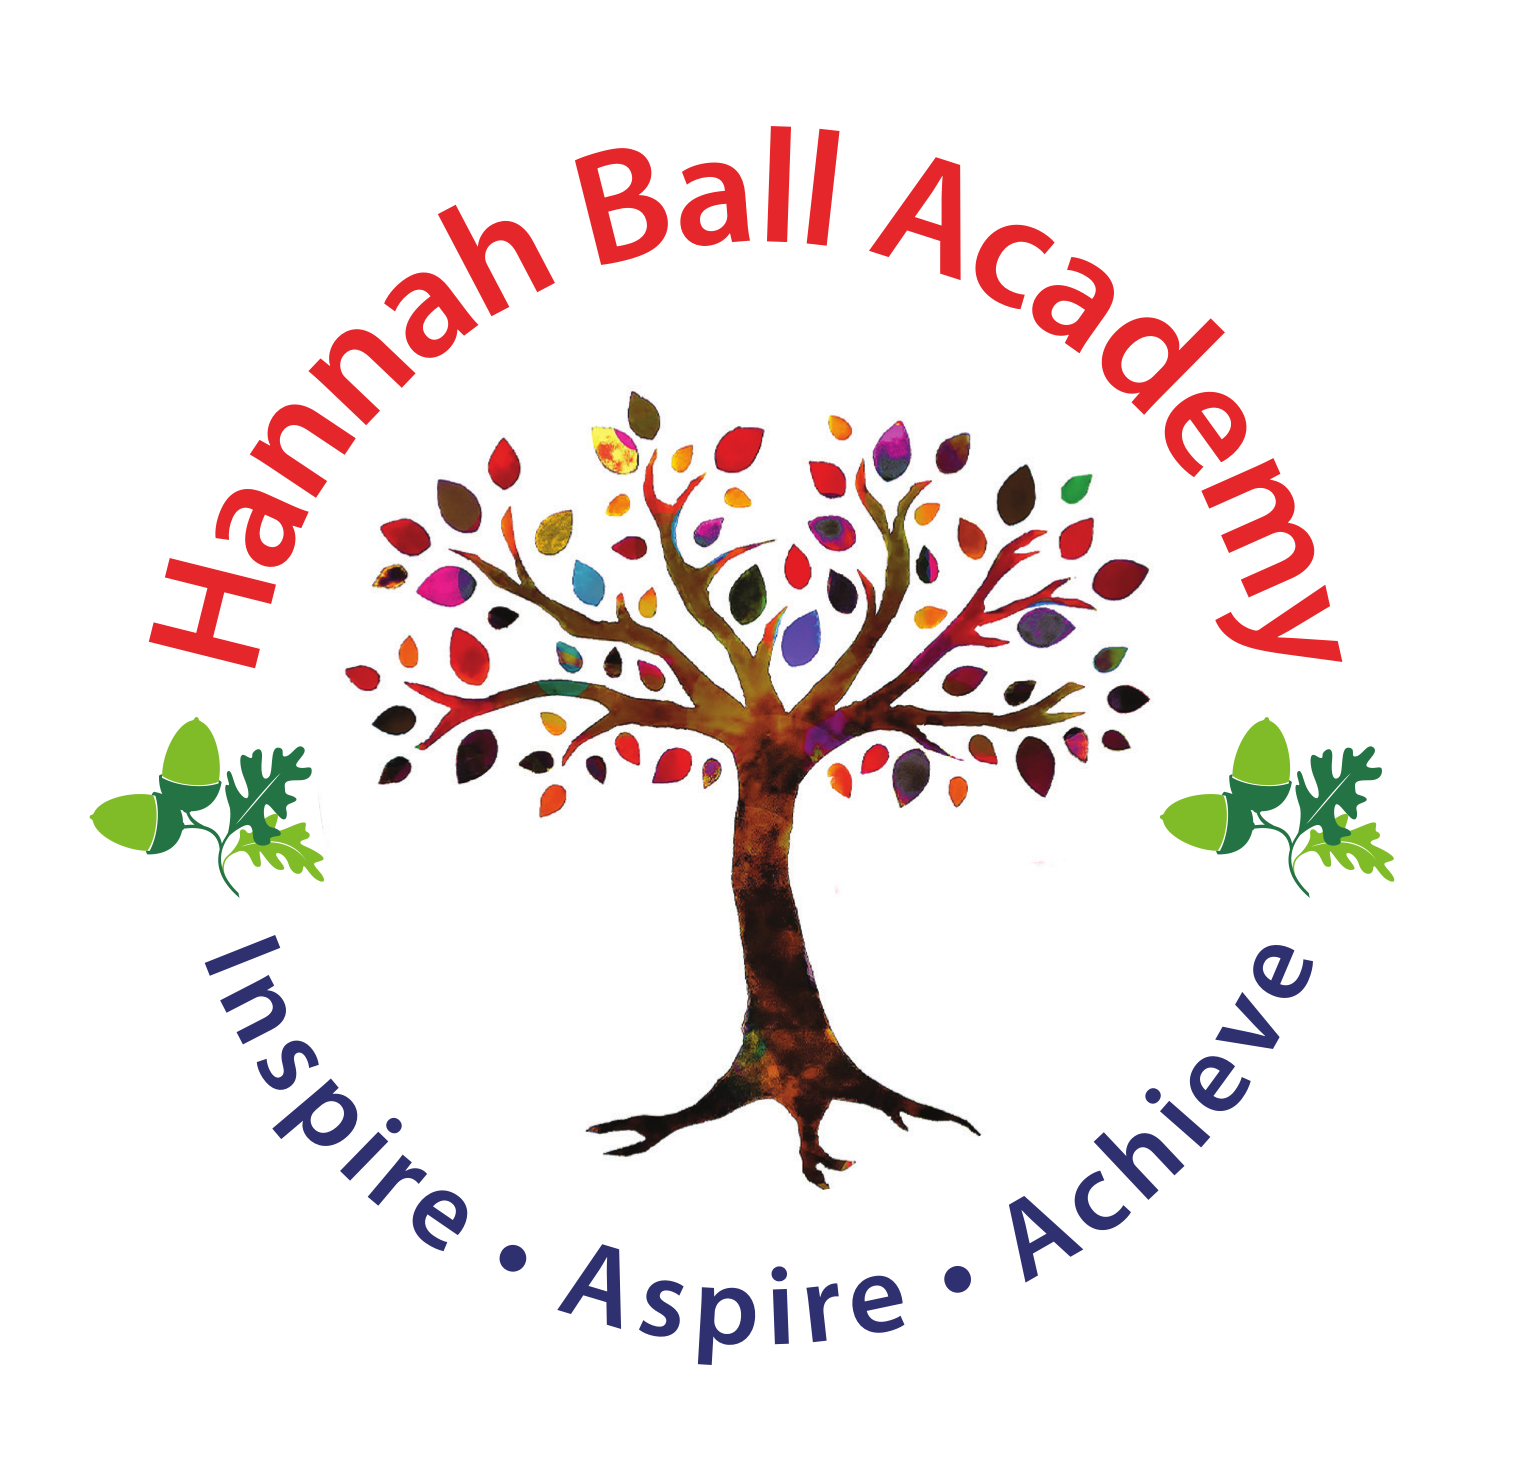 Hannah Ball Academy